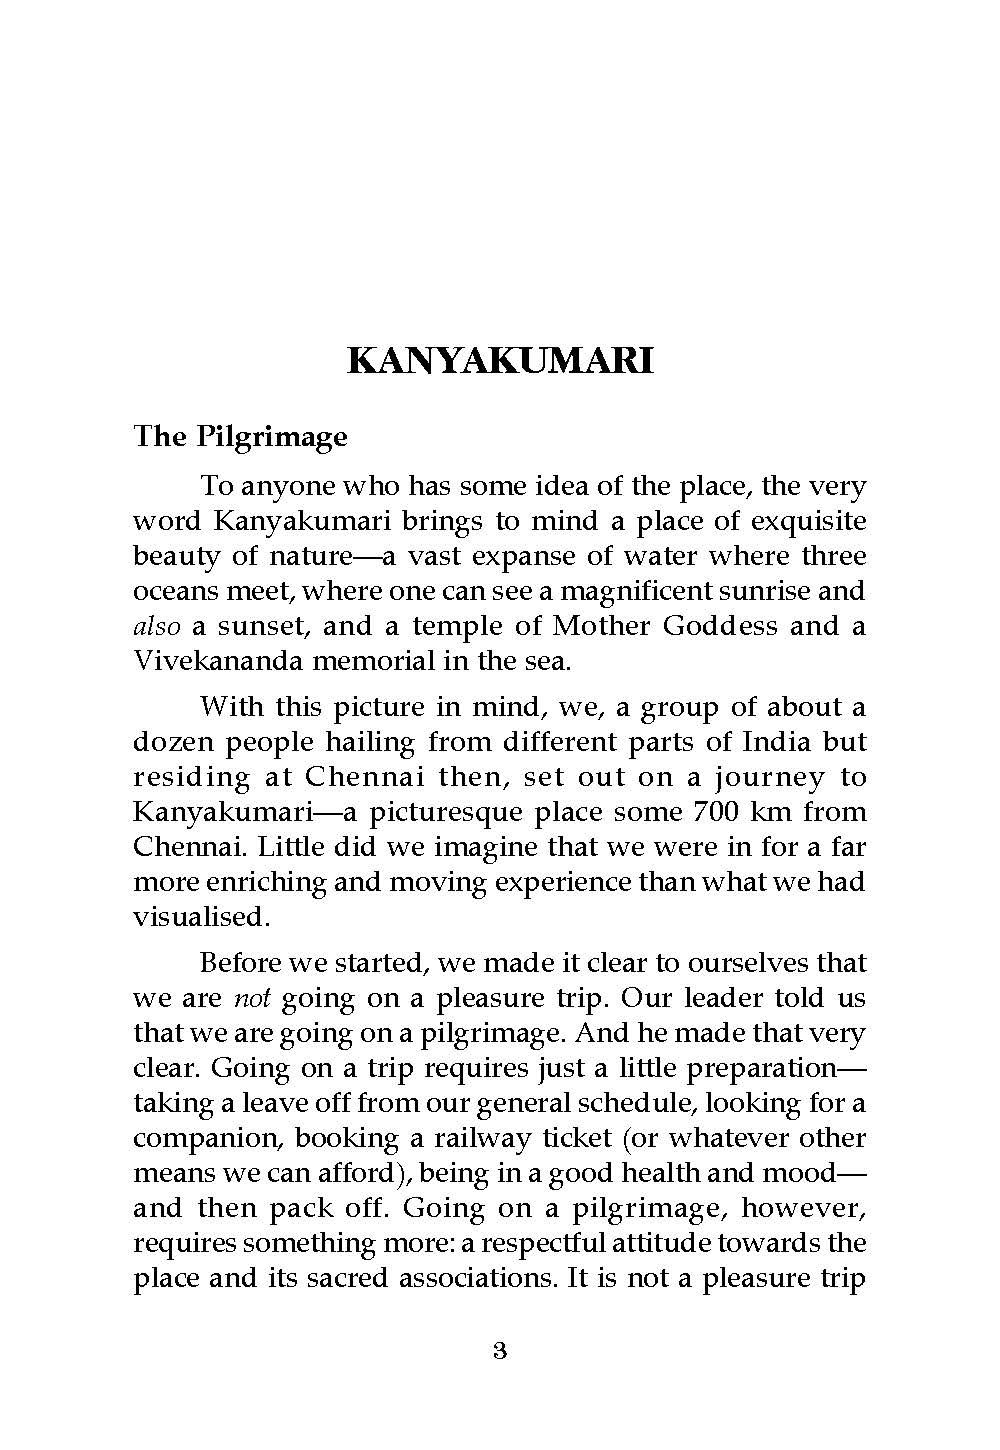 A Pilgrimage to Kanyakumari and Rameshwaram